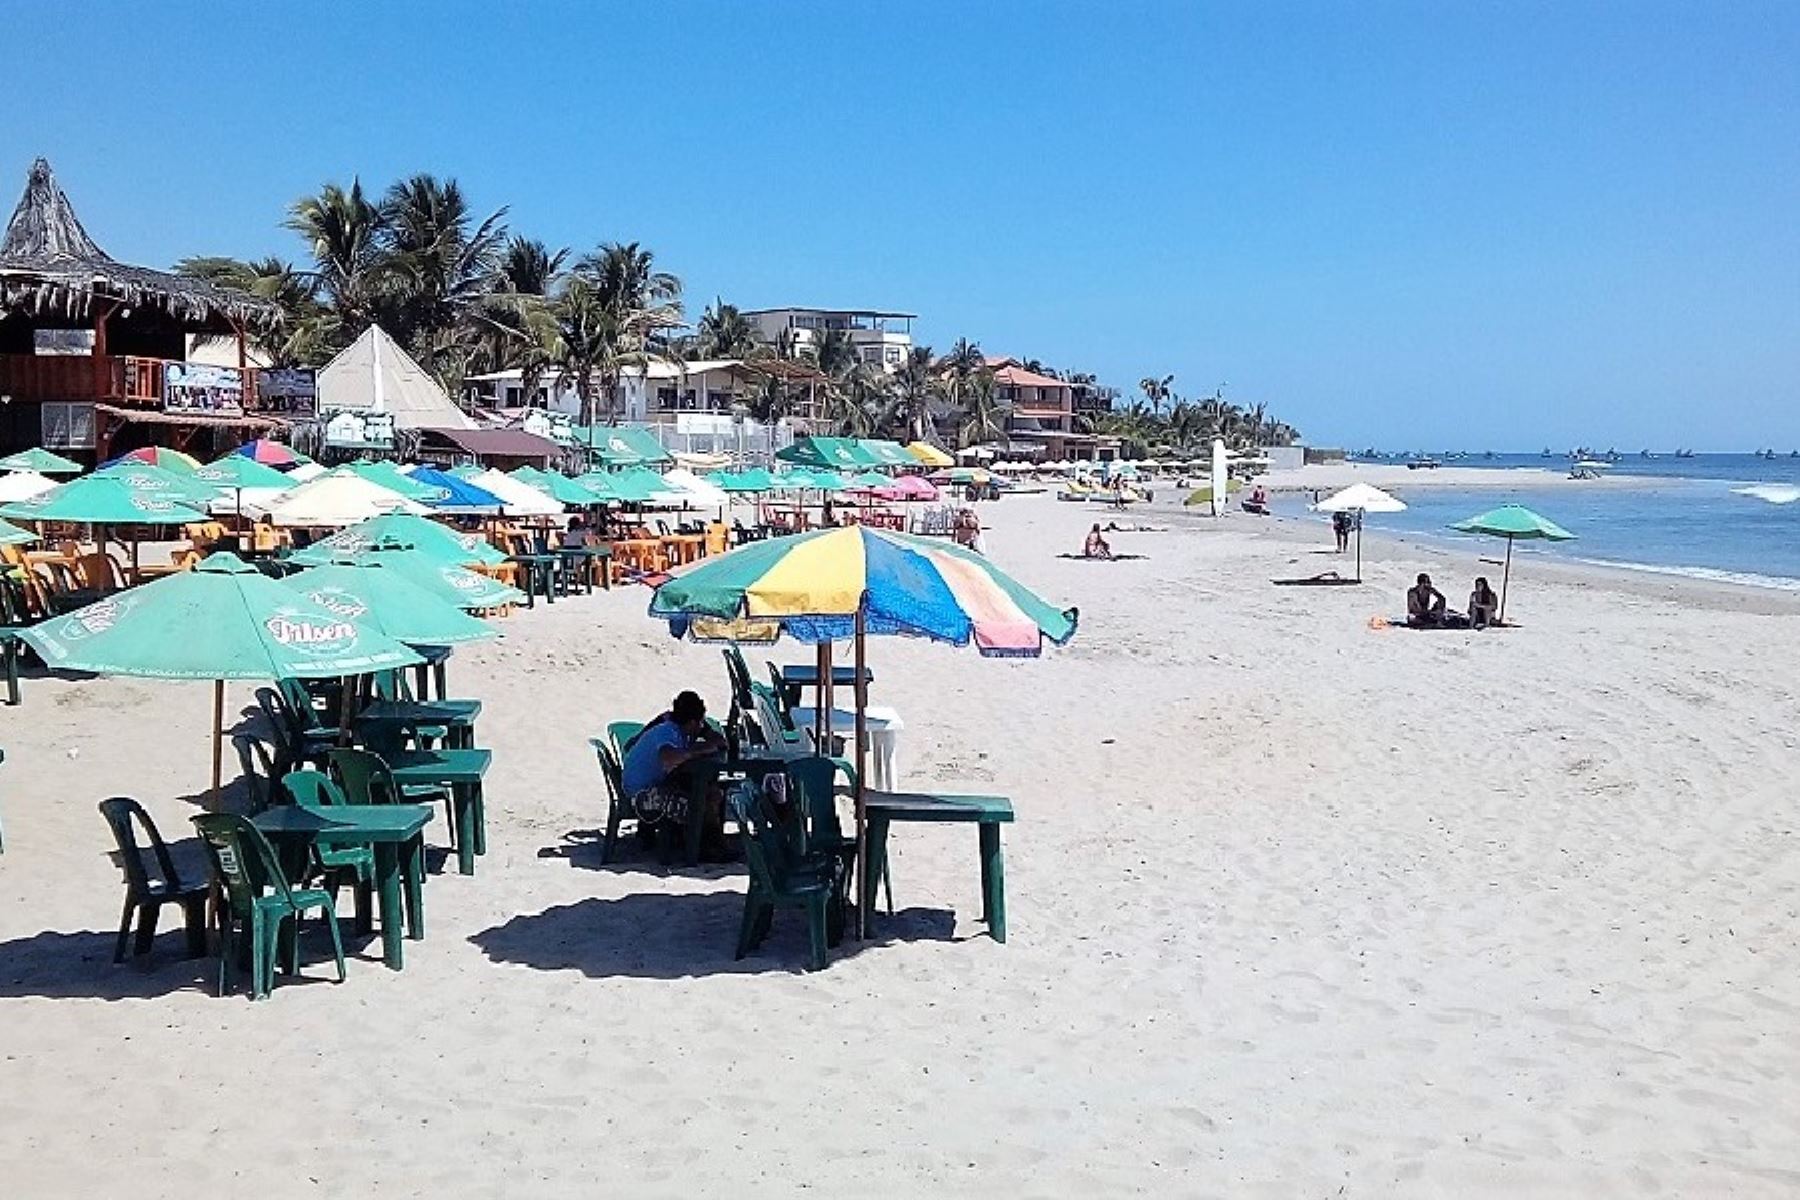 El control del ingreso y uso de playas en provincias, como Máncora, estará a cargo de las municipalidades provinciales que harán cumplir las normas sanitarias. ANDINA